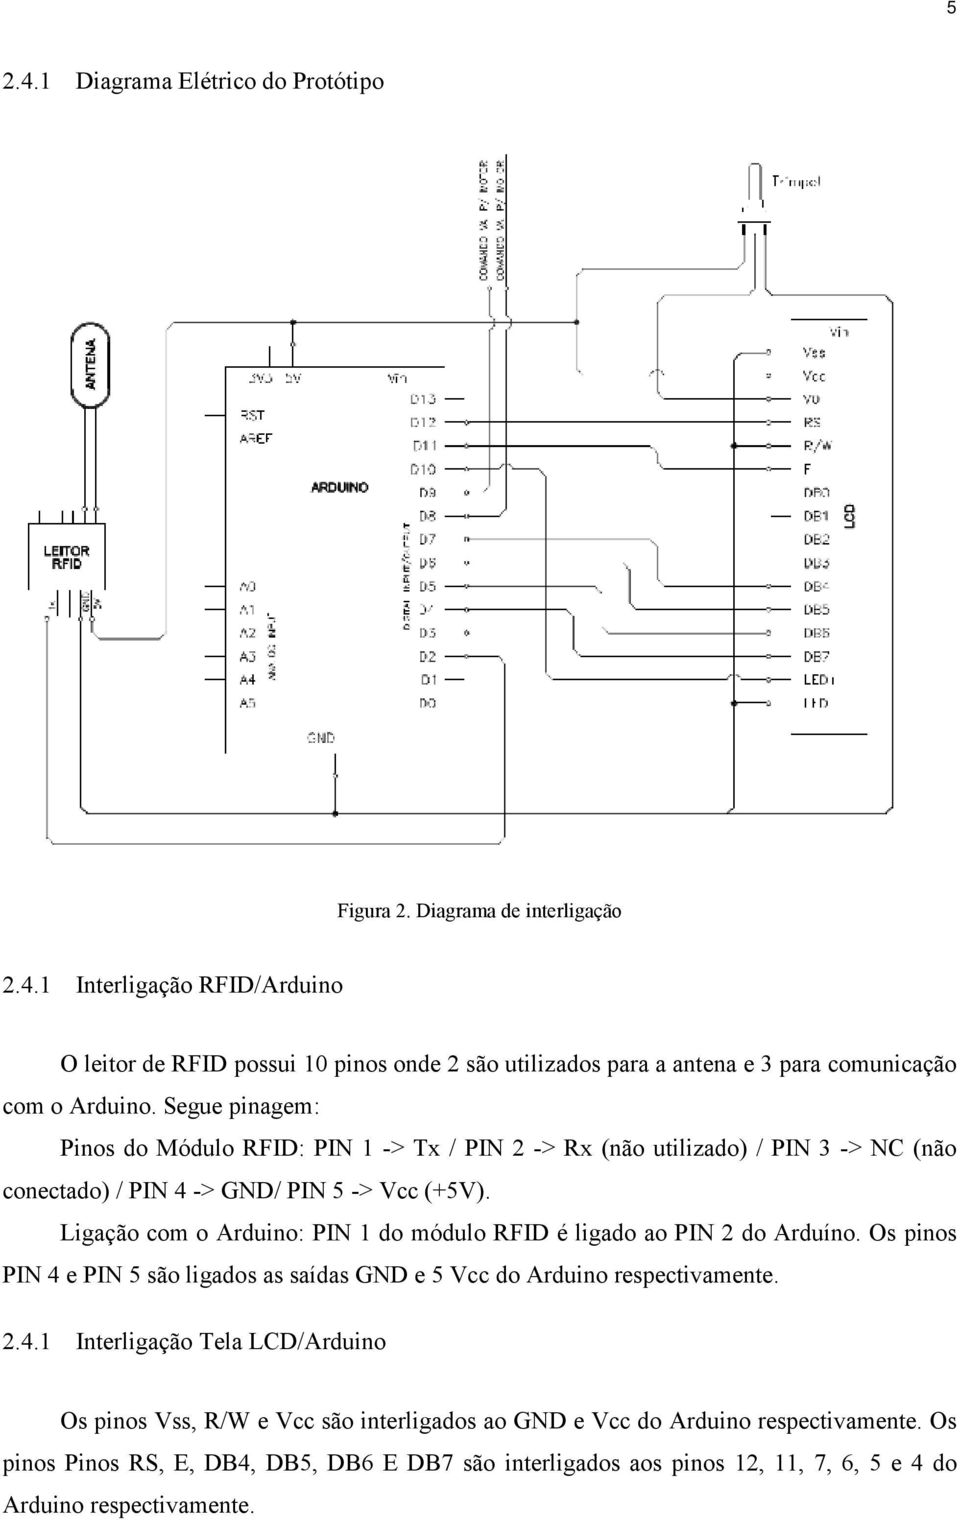 Ligação com o Arduino: PIN 1 do módulo RFID é ligado ao PIN 2 do Arduíno. Os pinos PIN 4 